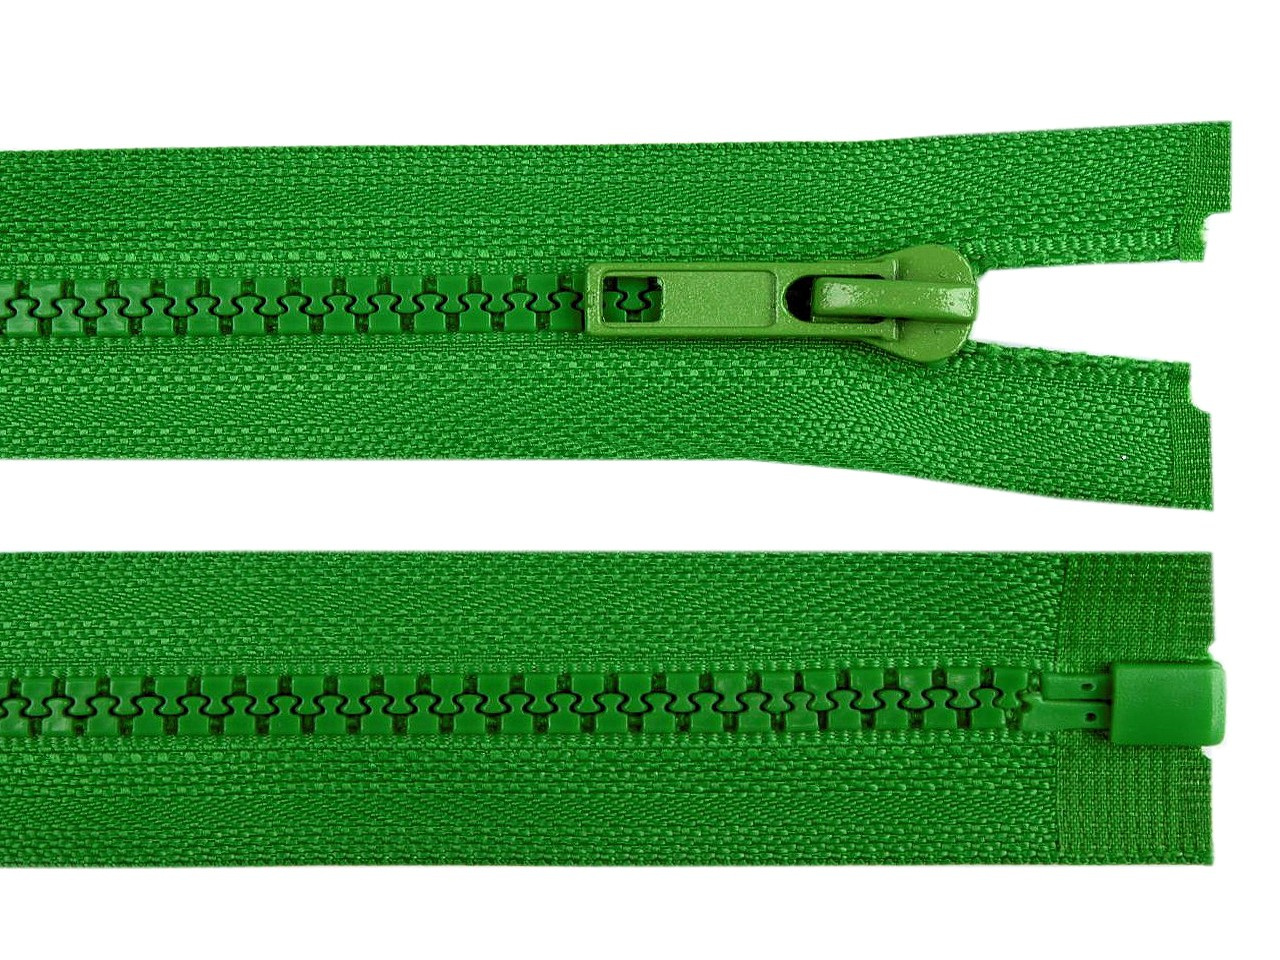 Kostěný zip No 5 délka 35 cm bundový, barva 239 zelená irská